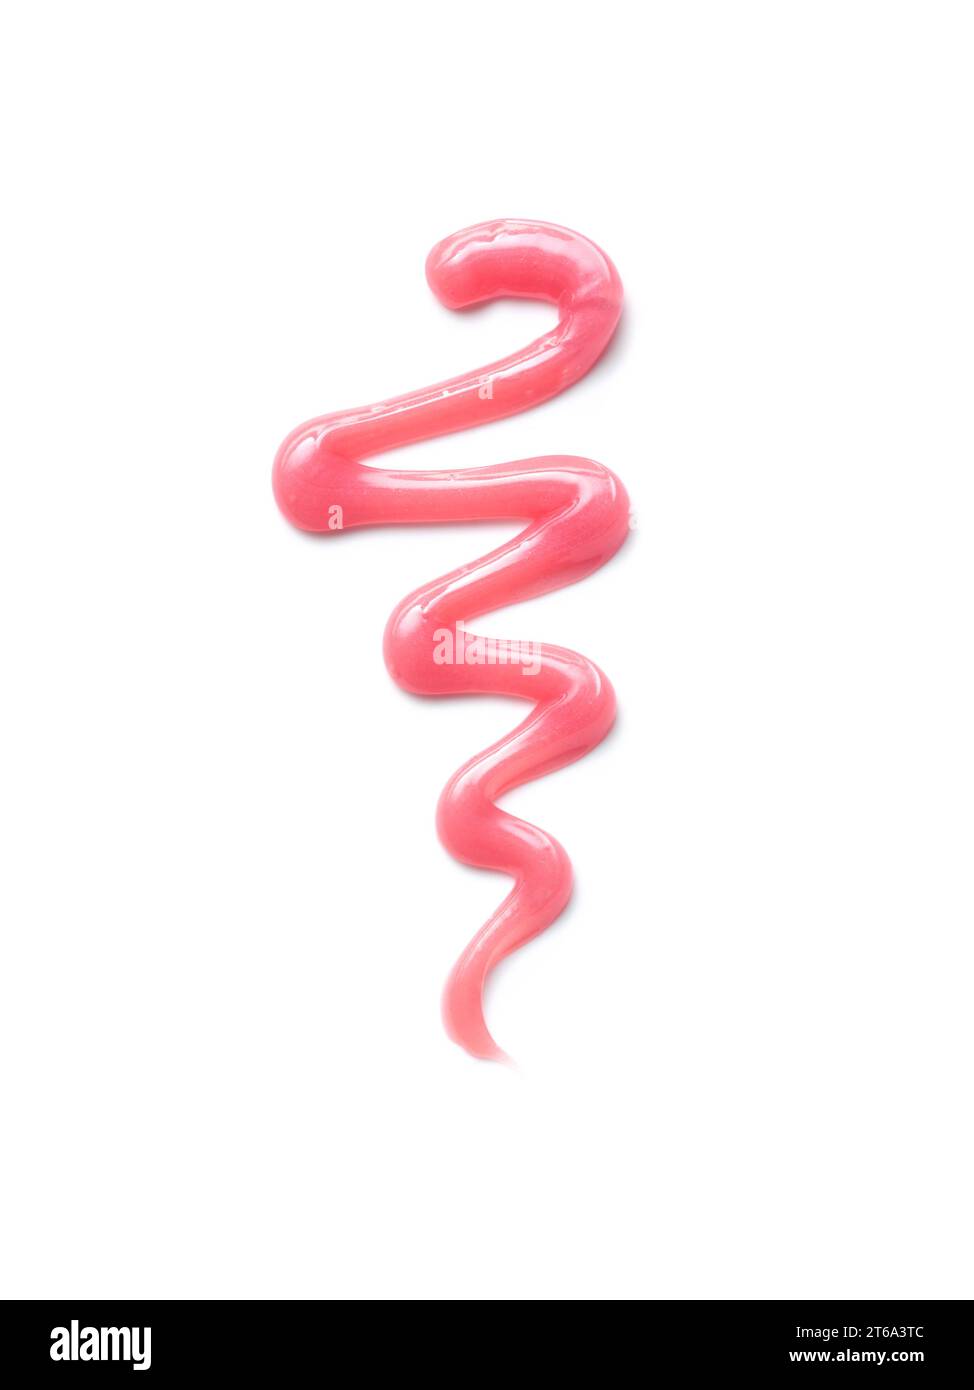 Balsamo per le labbra rosa texture lucida, trama isolata su sfondo bianco. Campione di prodotti cosmetici Foto Stock